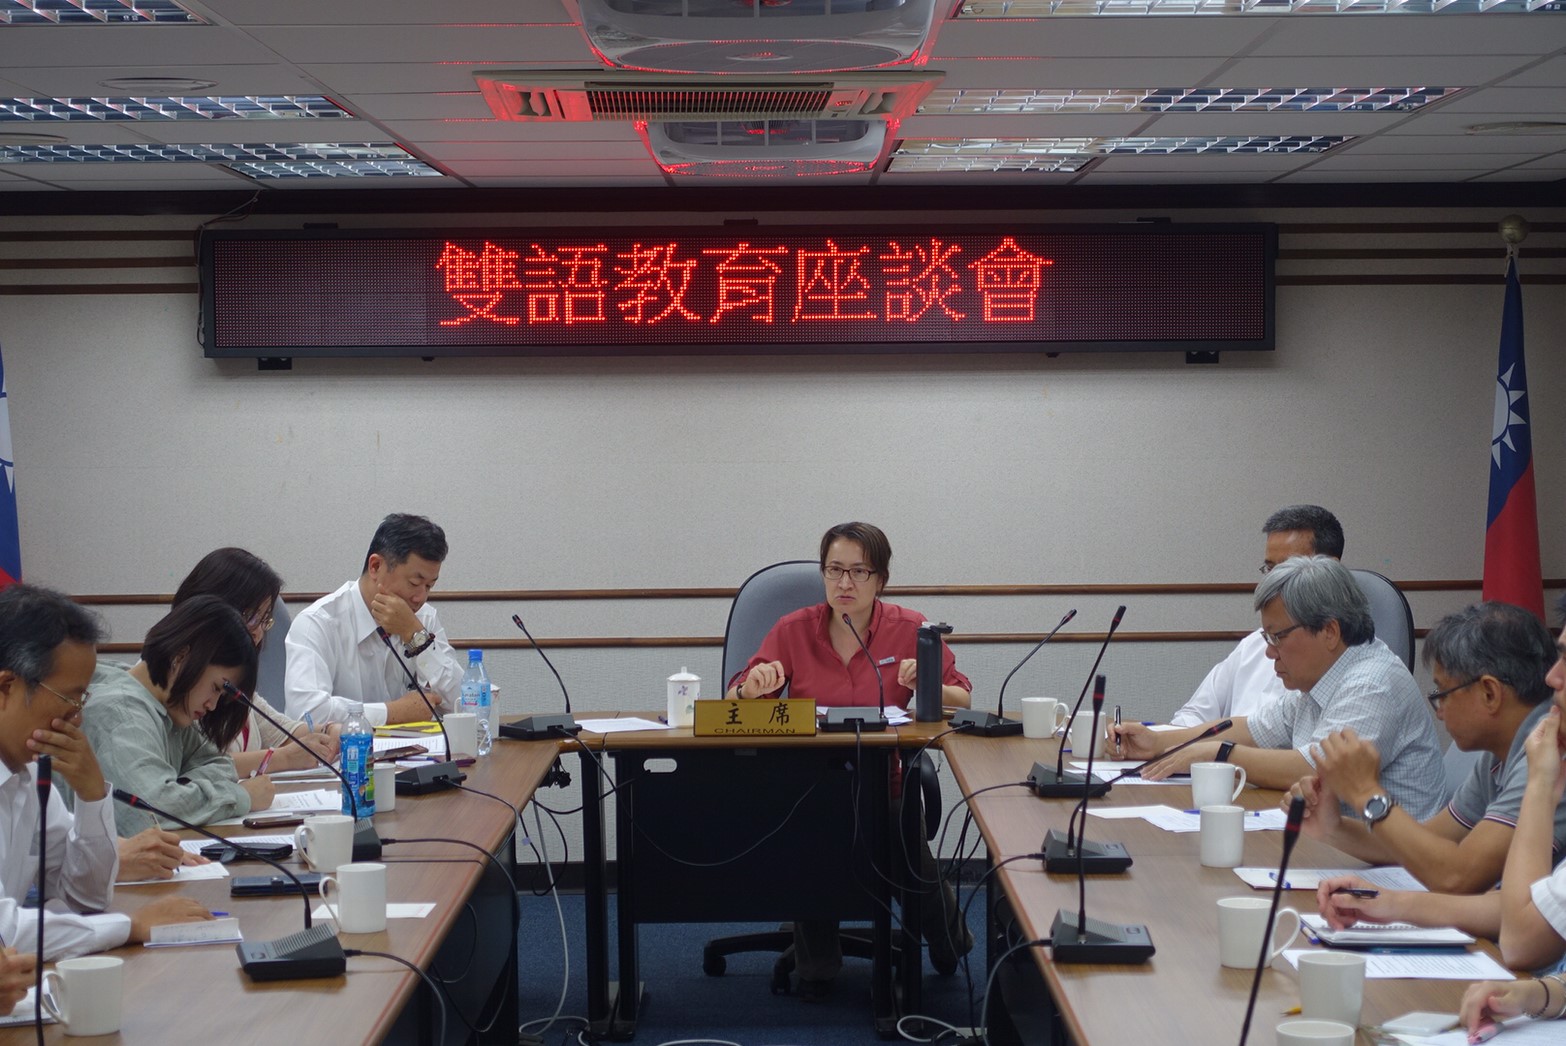 立委蕭美琴舉行雙語教育座談會